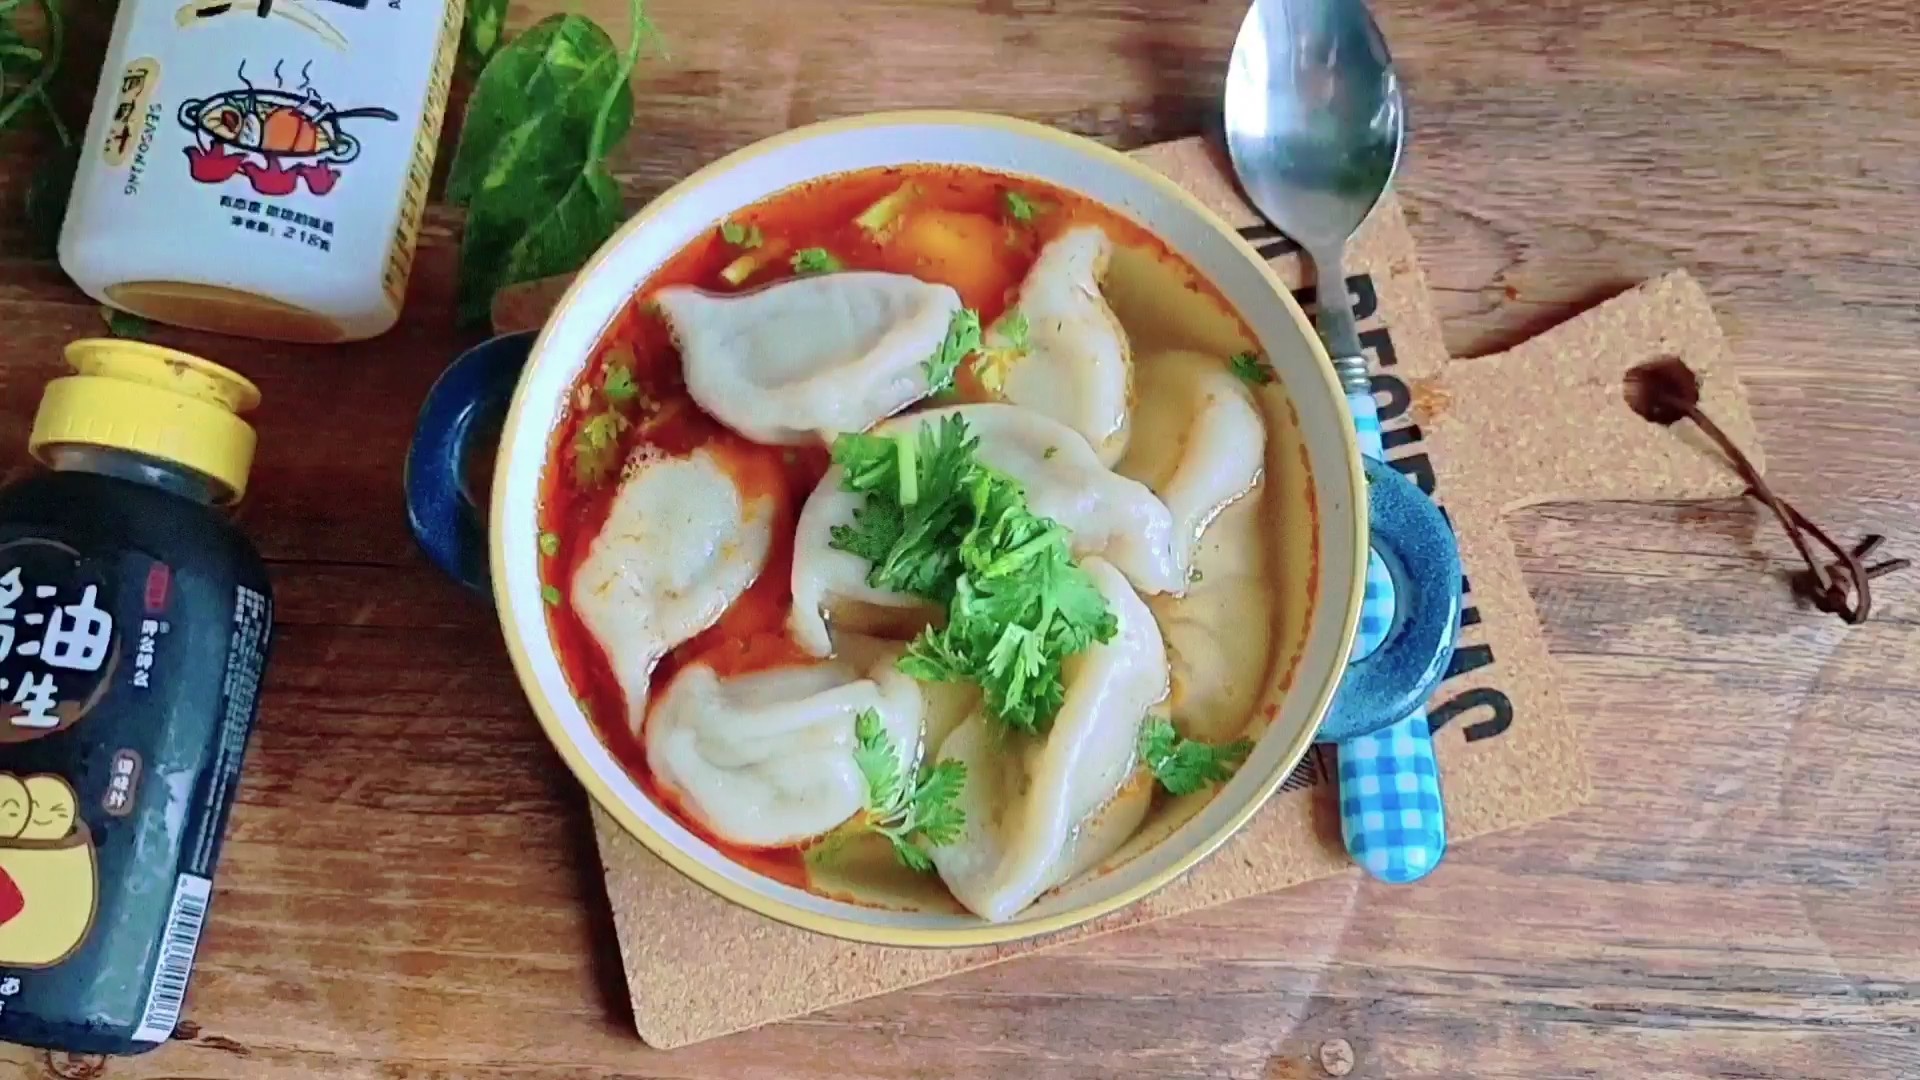 #冬至大如年# Eat Dumplings in The Winter Solstice, Fast Food...sour Soup recipe